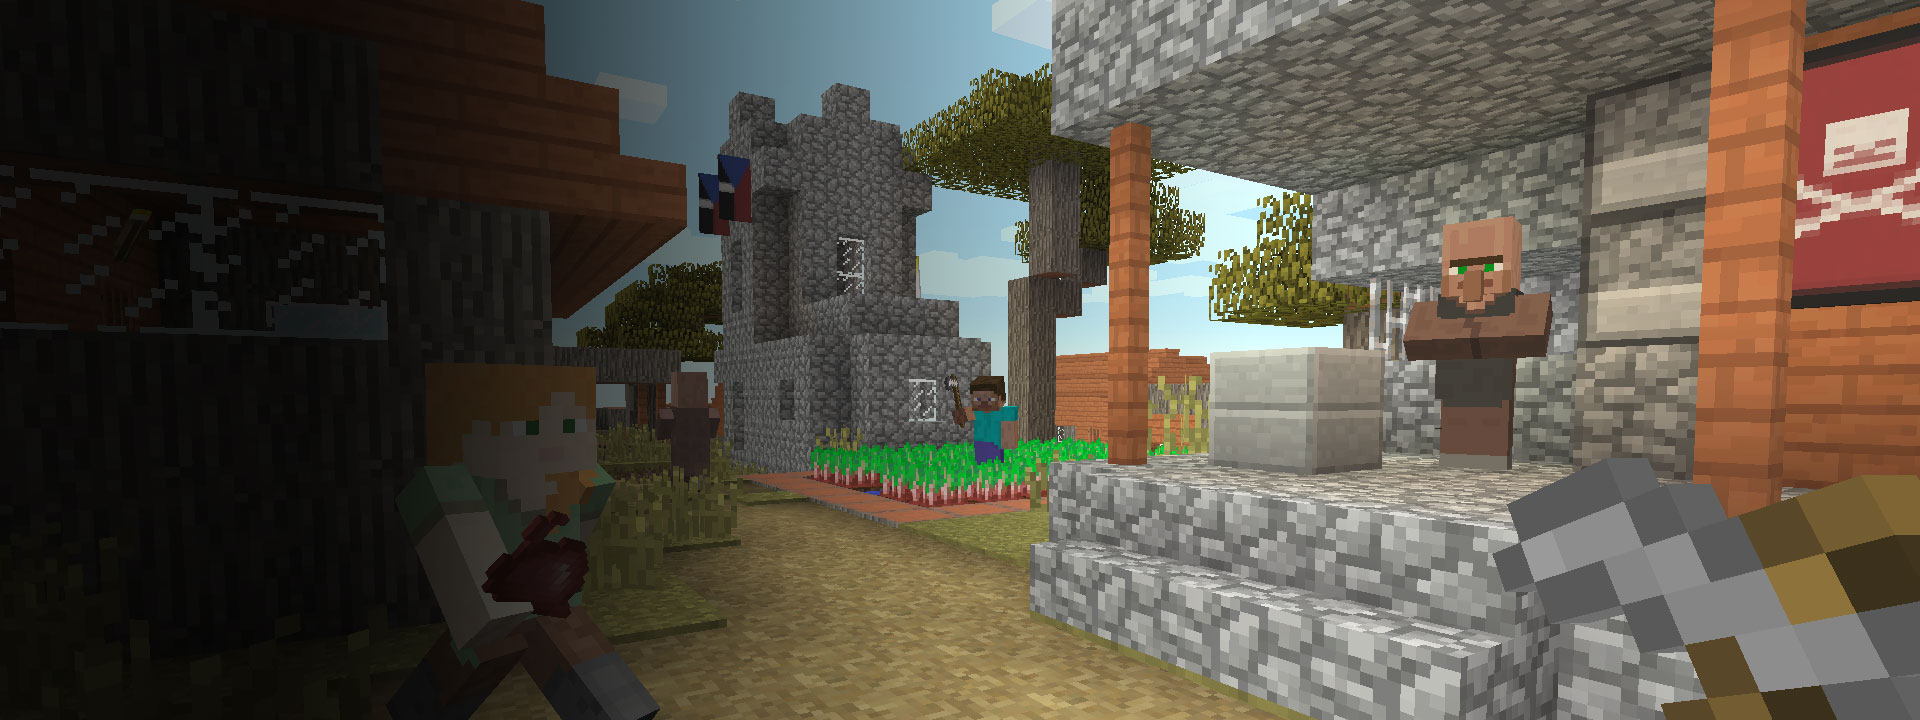 Se ven varias casas y varios personajes de Minecraft caminando en primer plano.